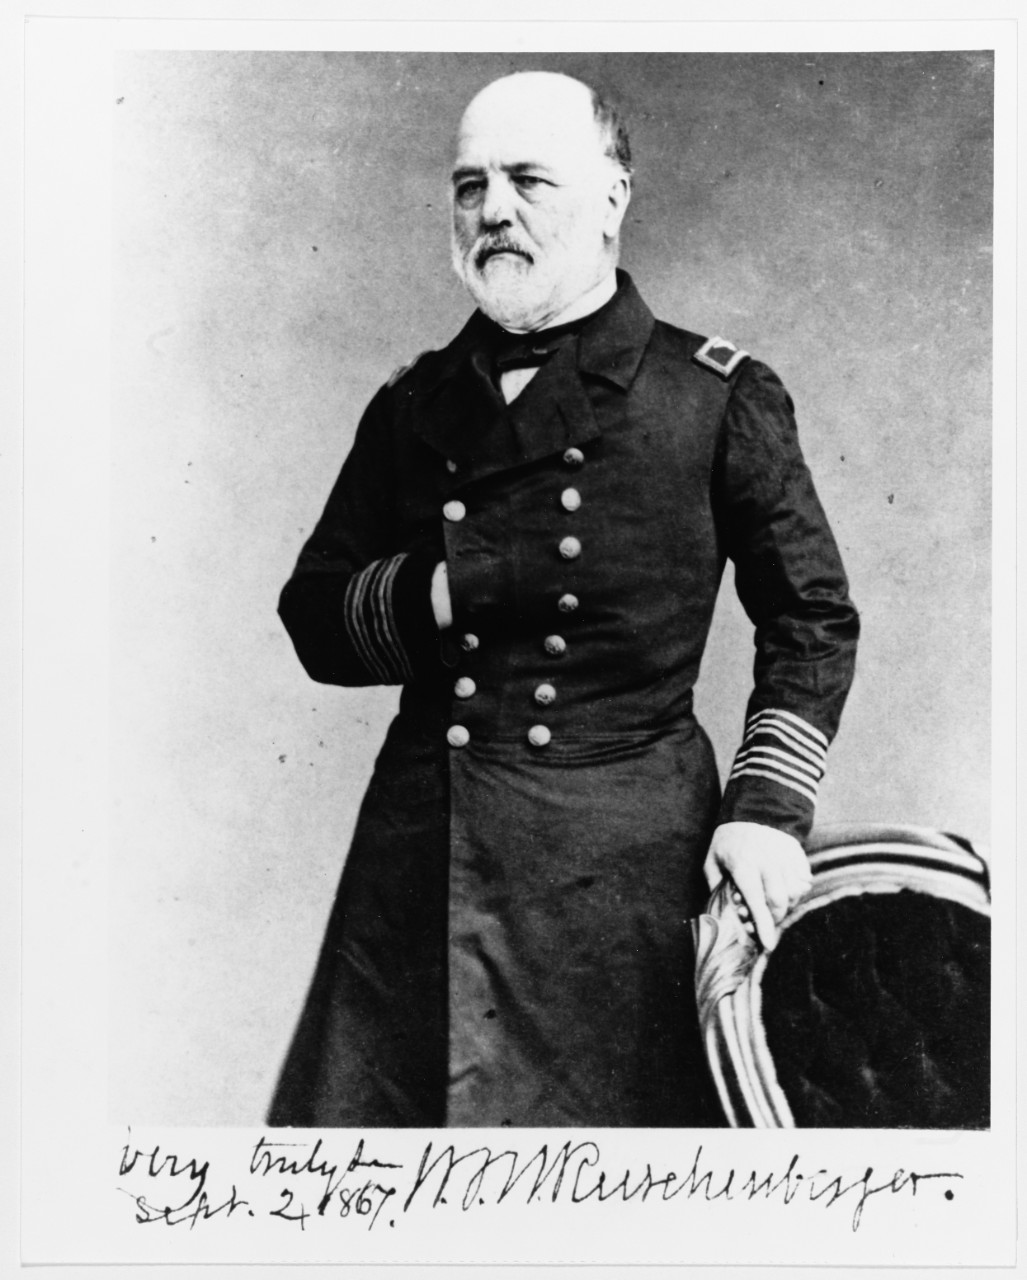 photo of bearded man in Navy surgeon uniform